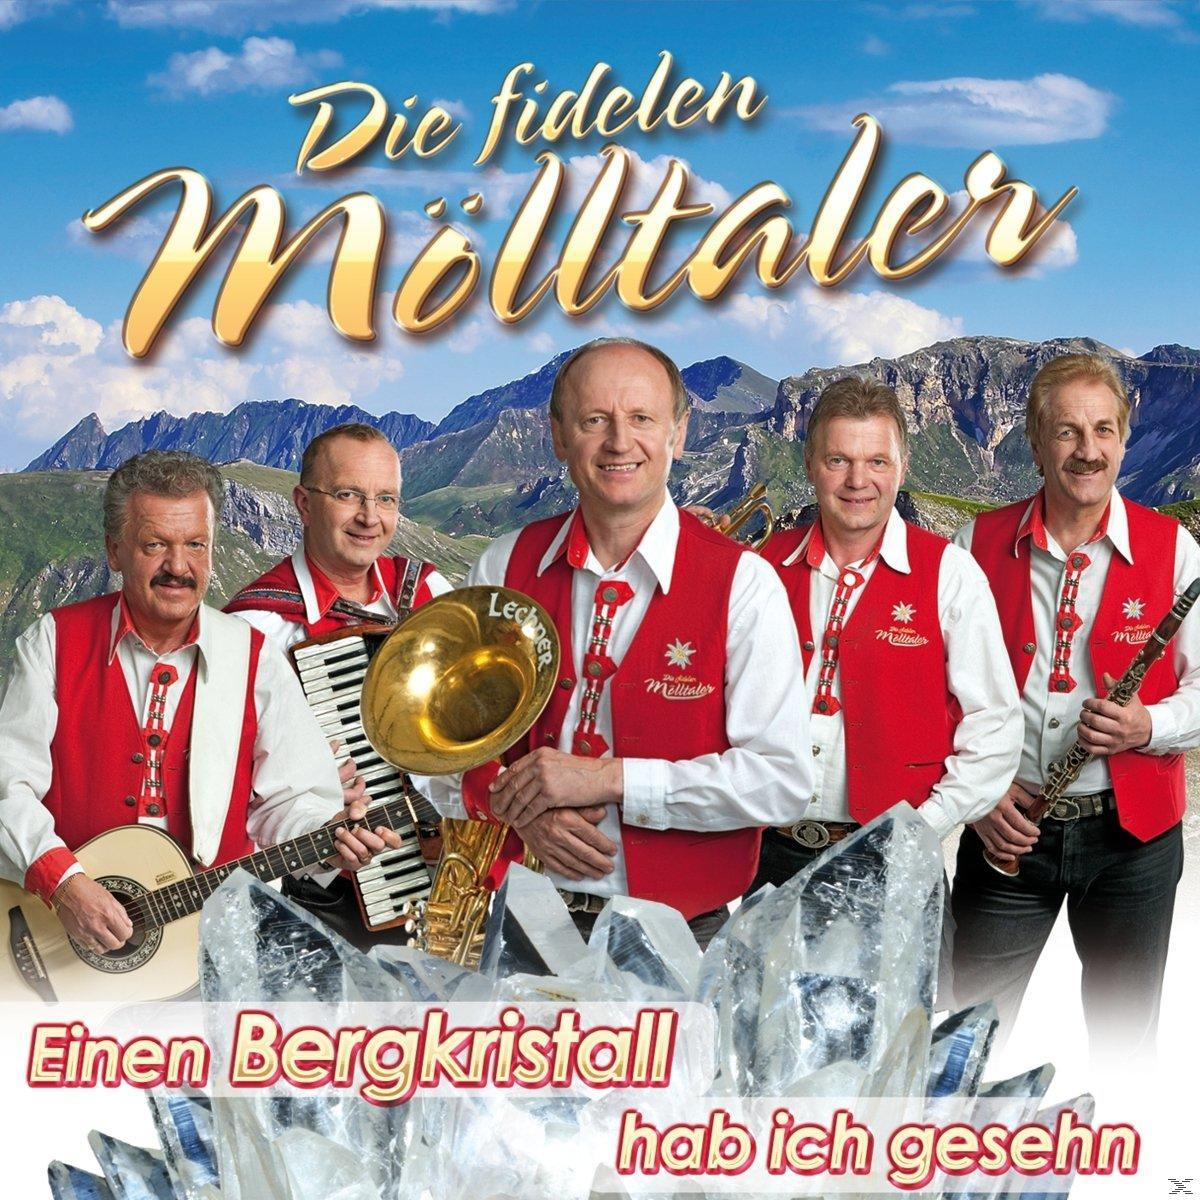 Bergkristall - ich Einen Die ges Mölltaler hab (CD) - Fidelen